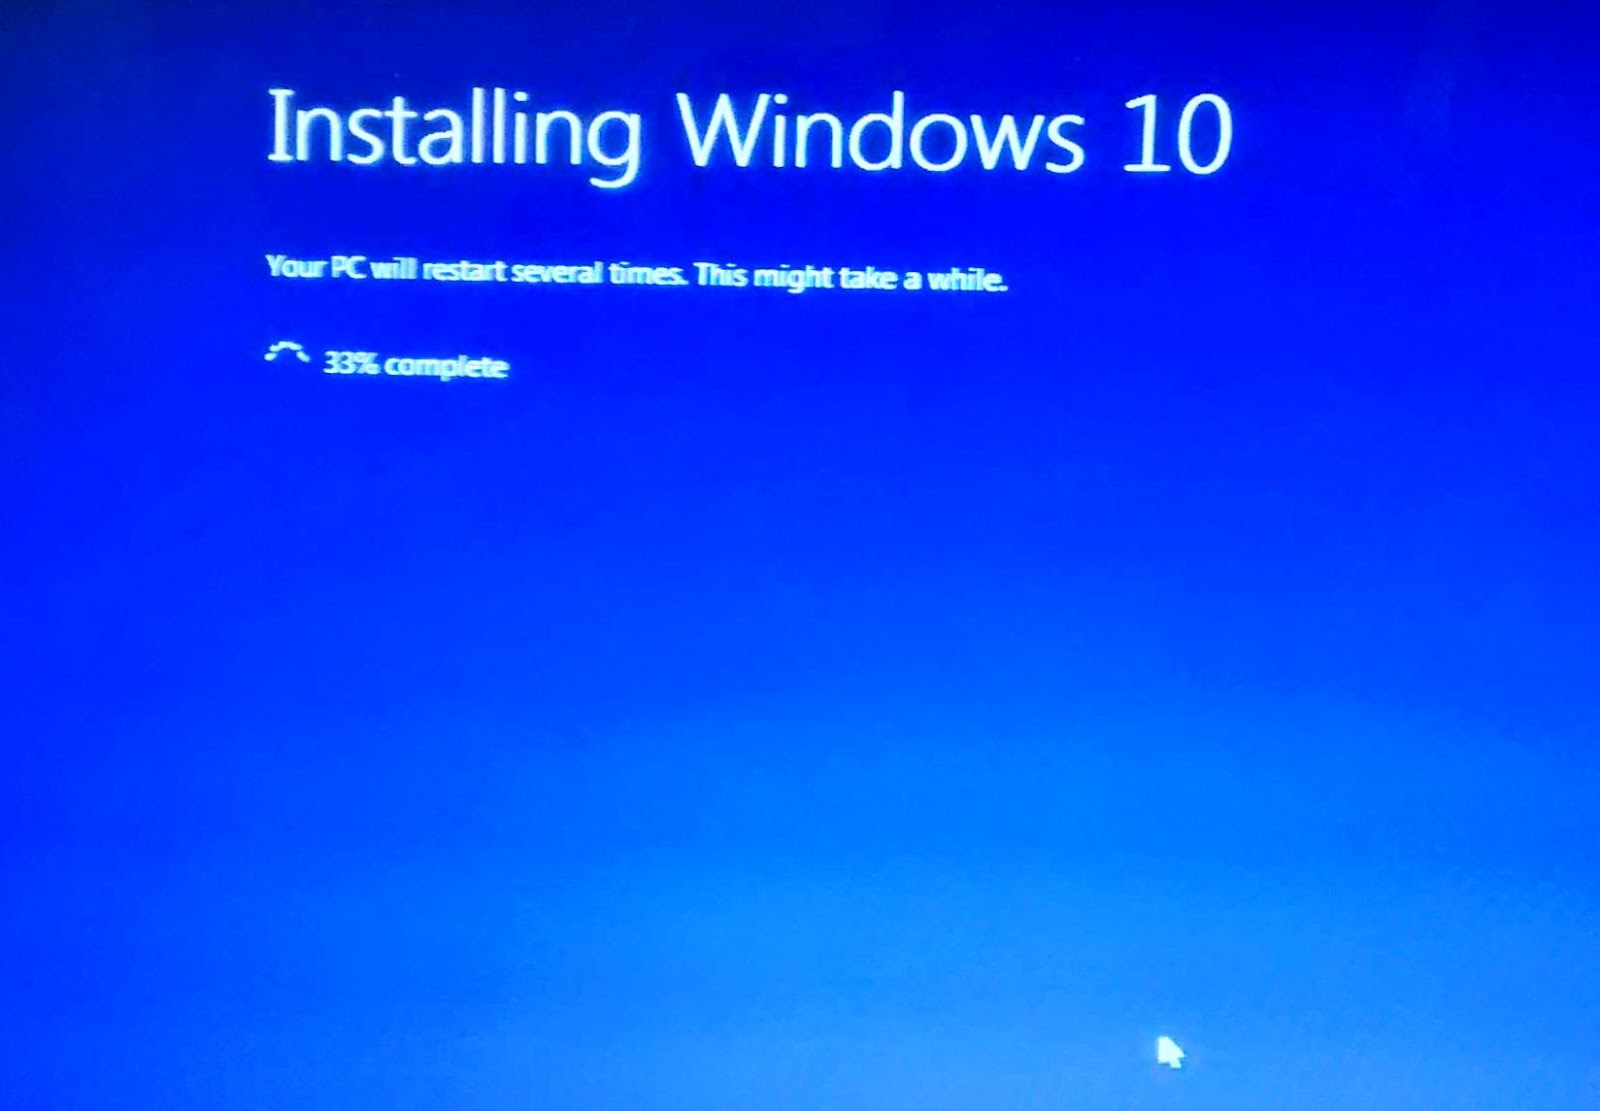 vshare installer windows 10